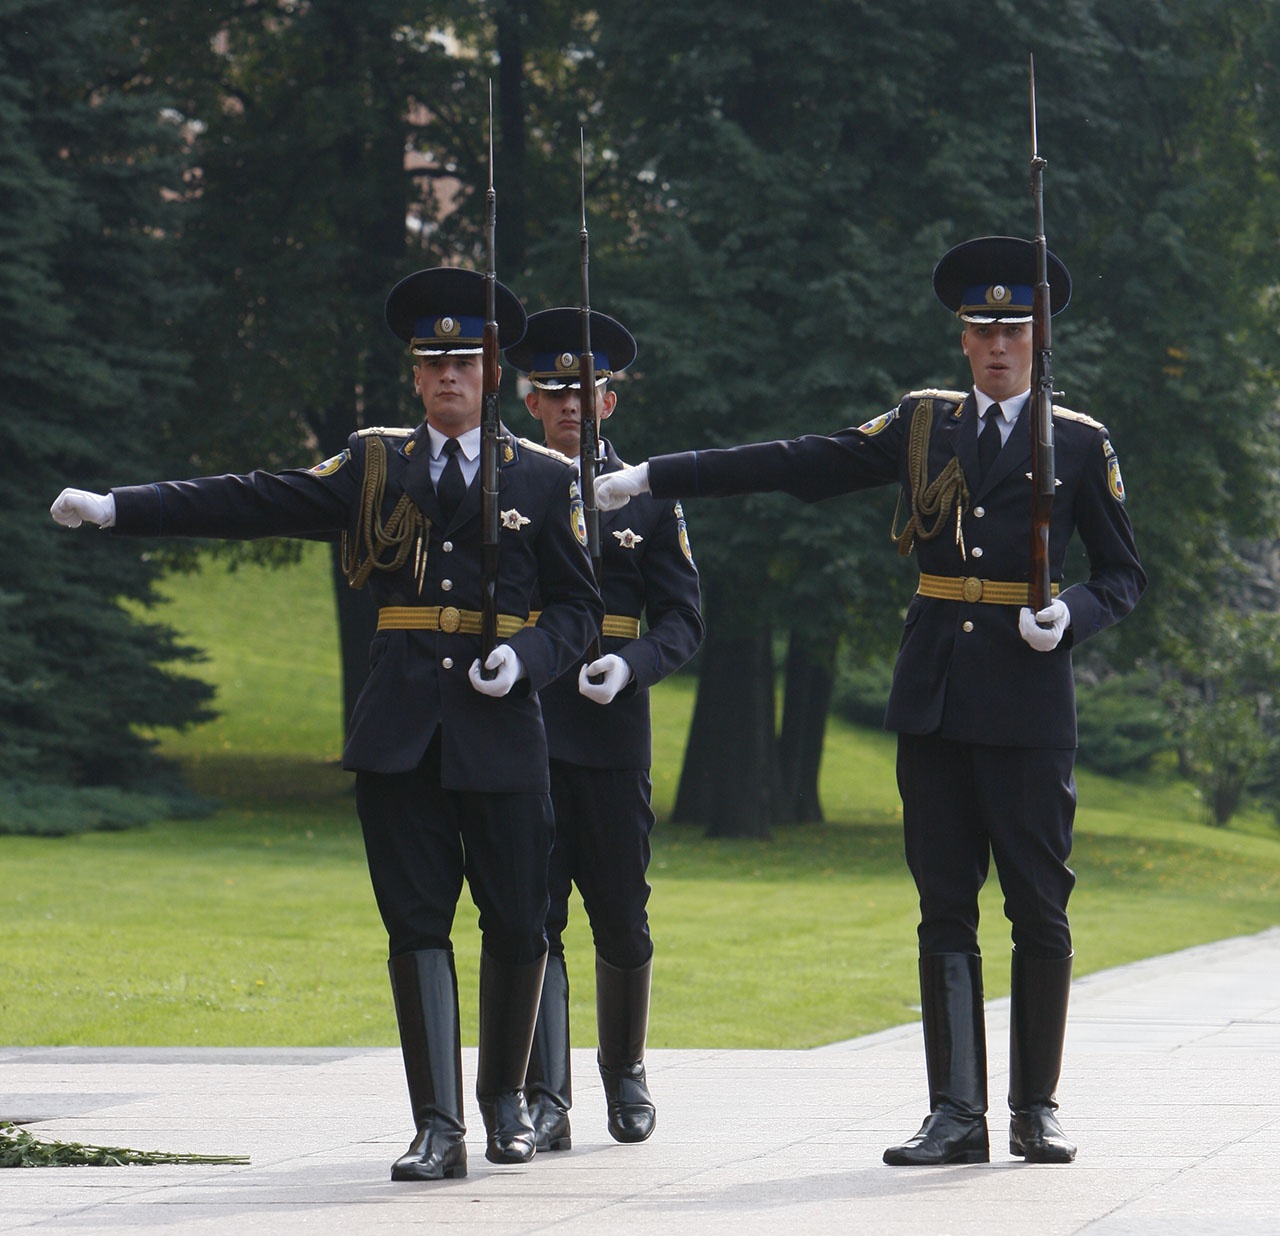 Самозарядный карабин Симонова сегодня можно увидеть на военных парадах и торжественных церемониях с участием войск.